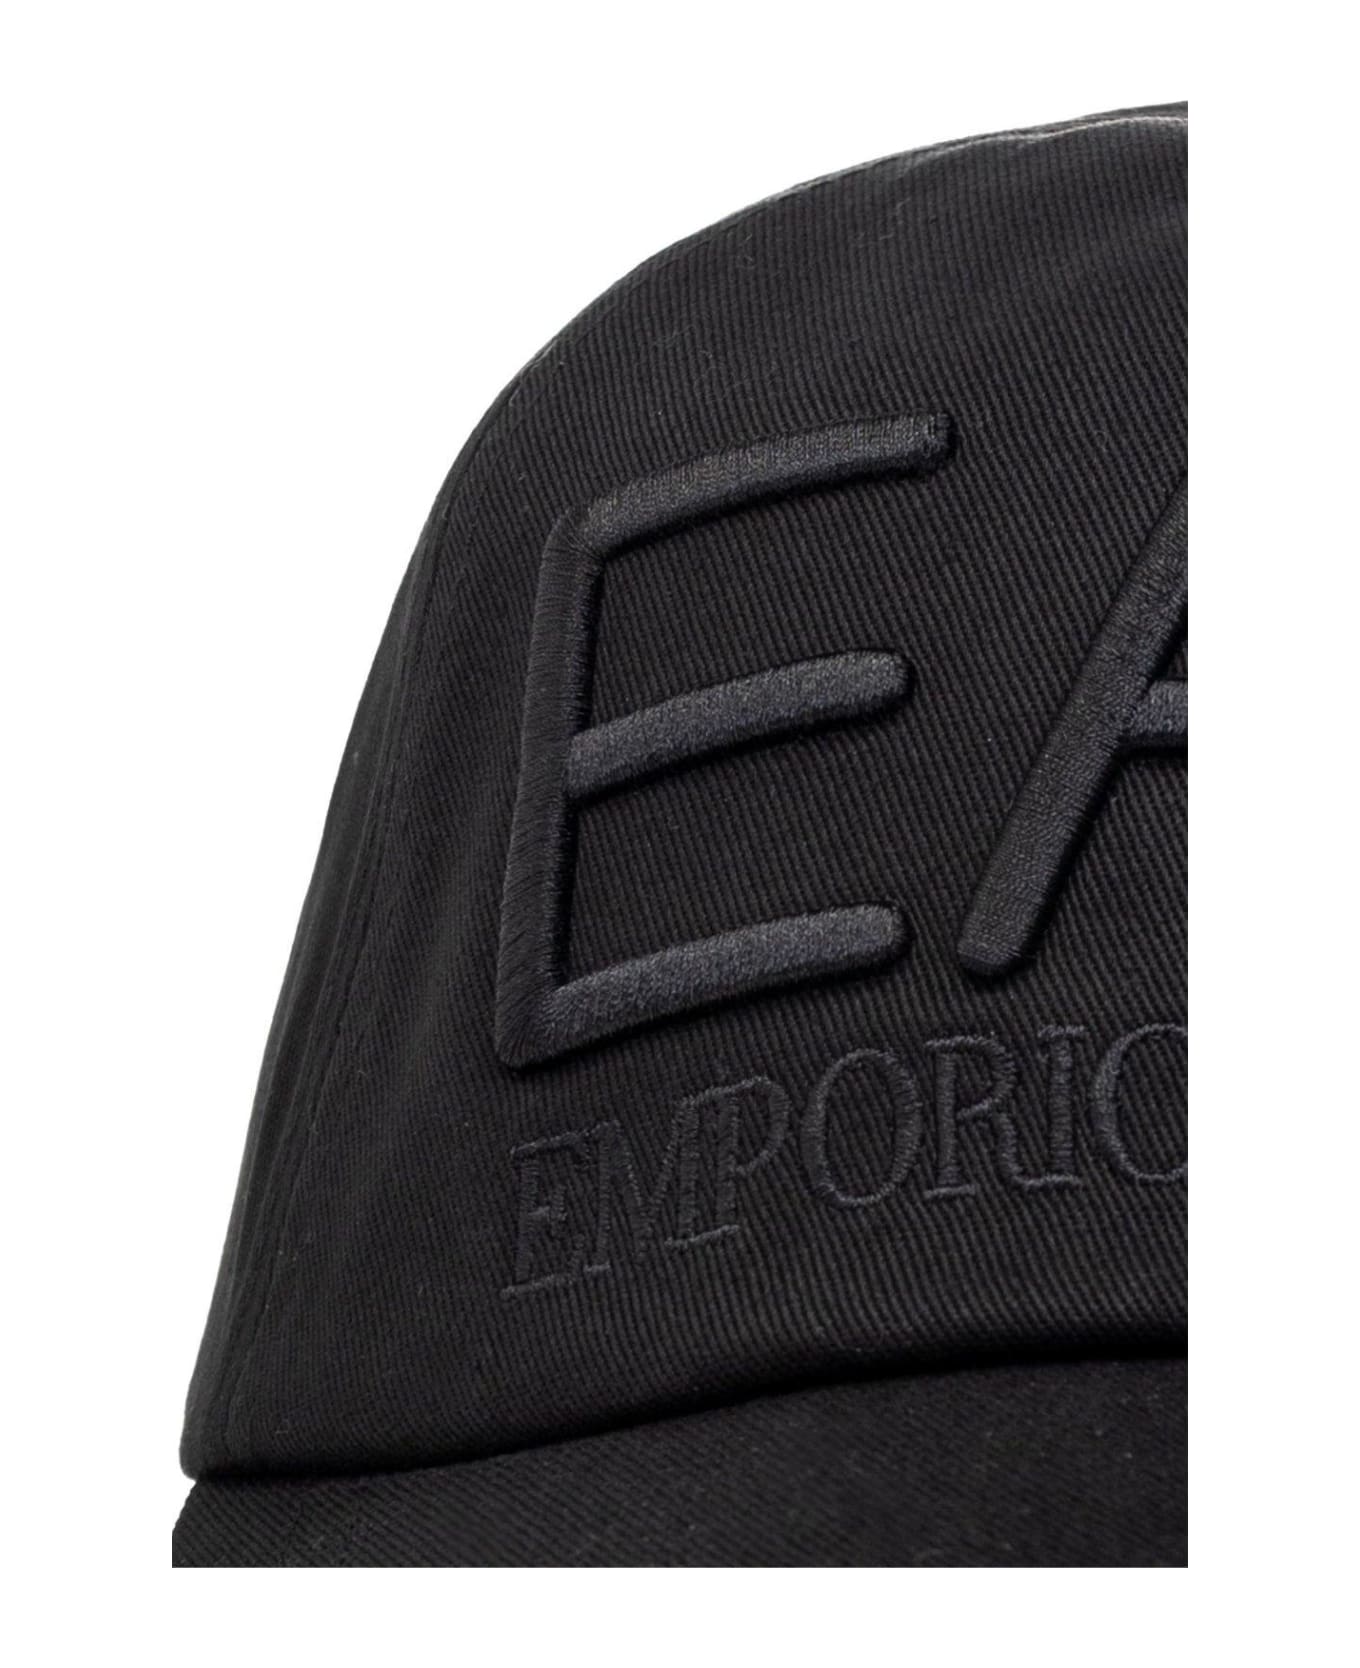 EA7 Logo Embroidered Baseball Cap - Black 1